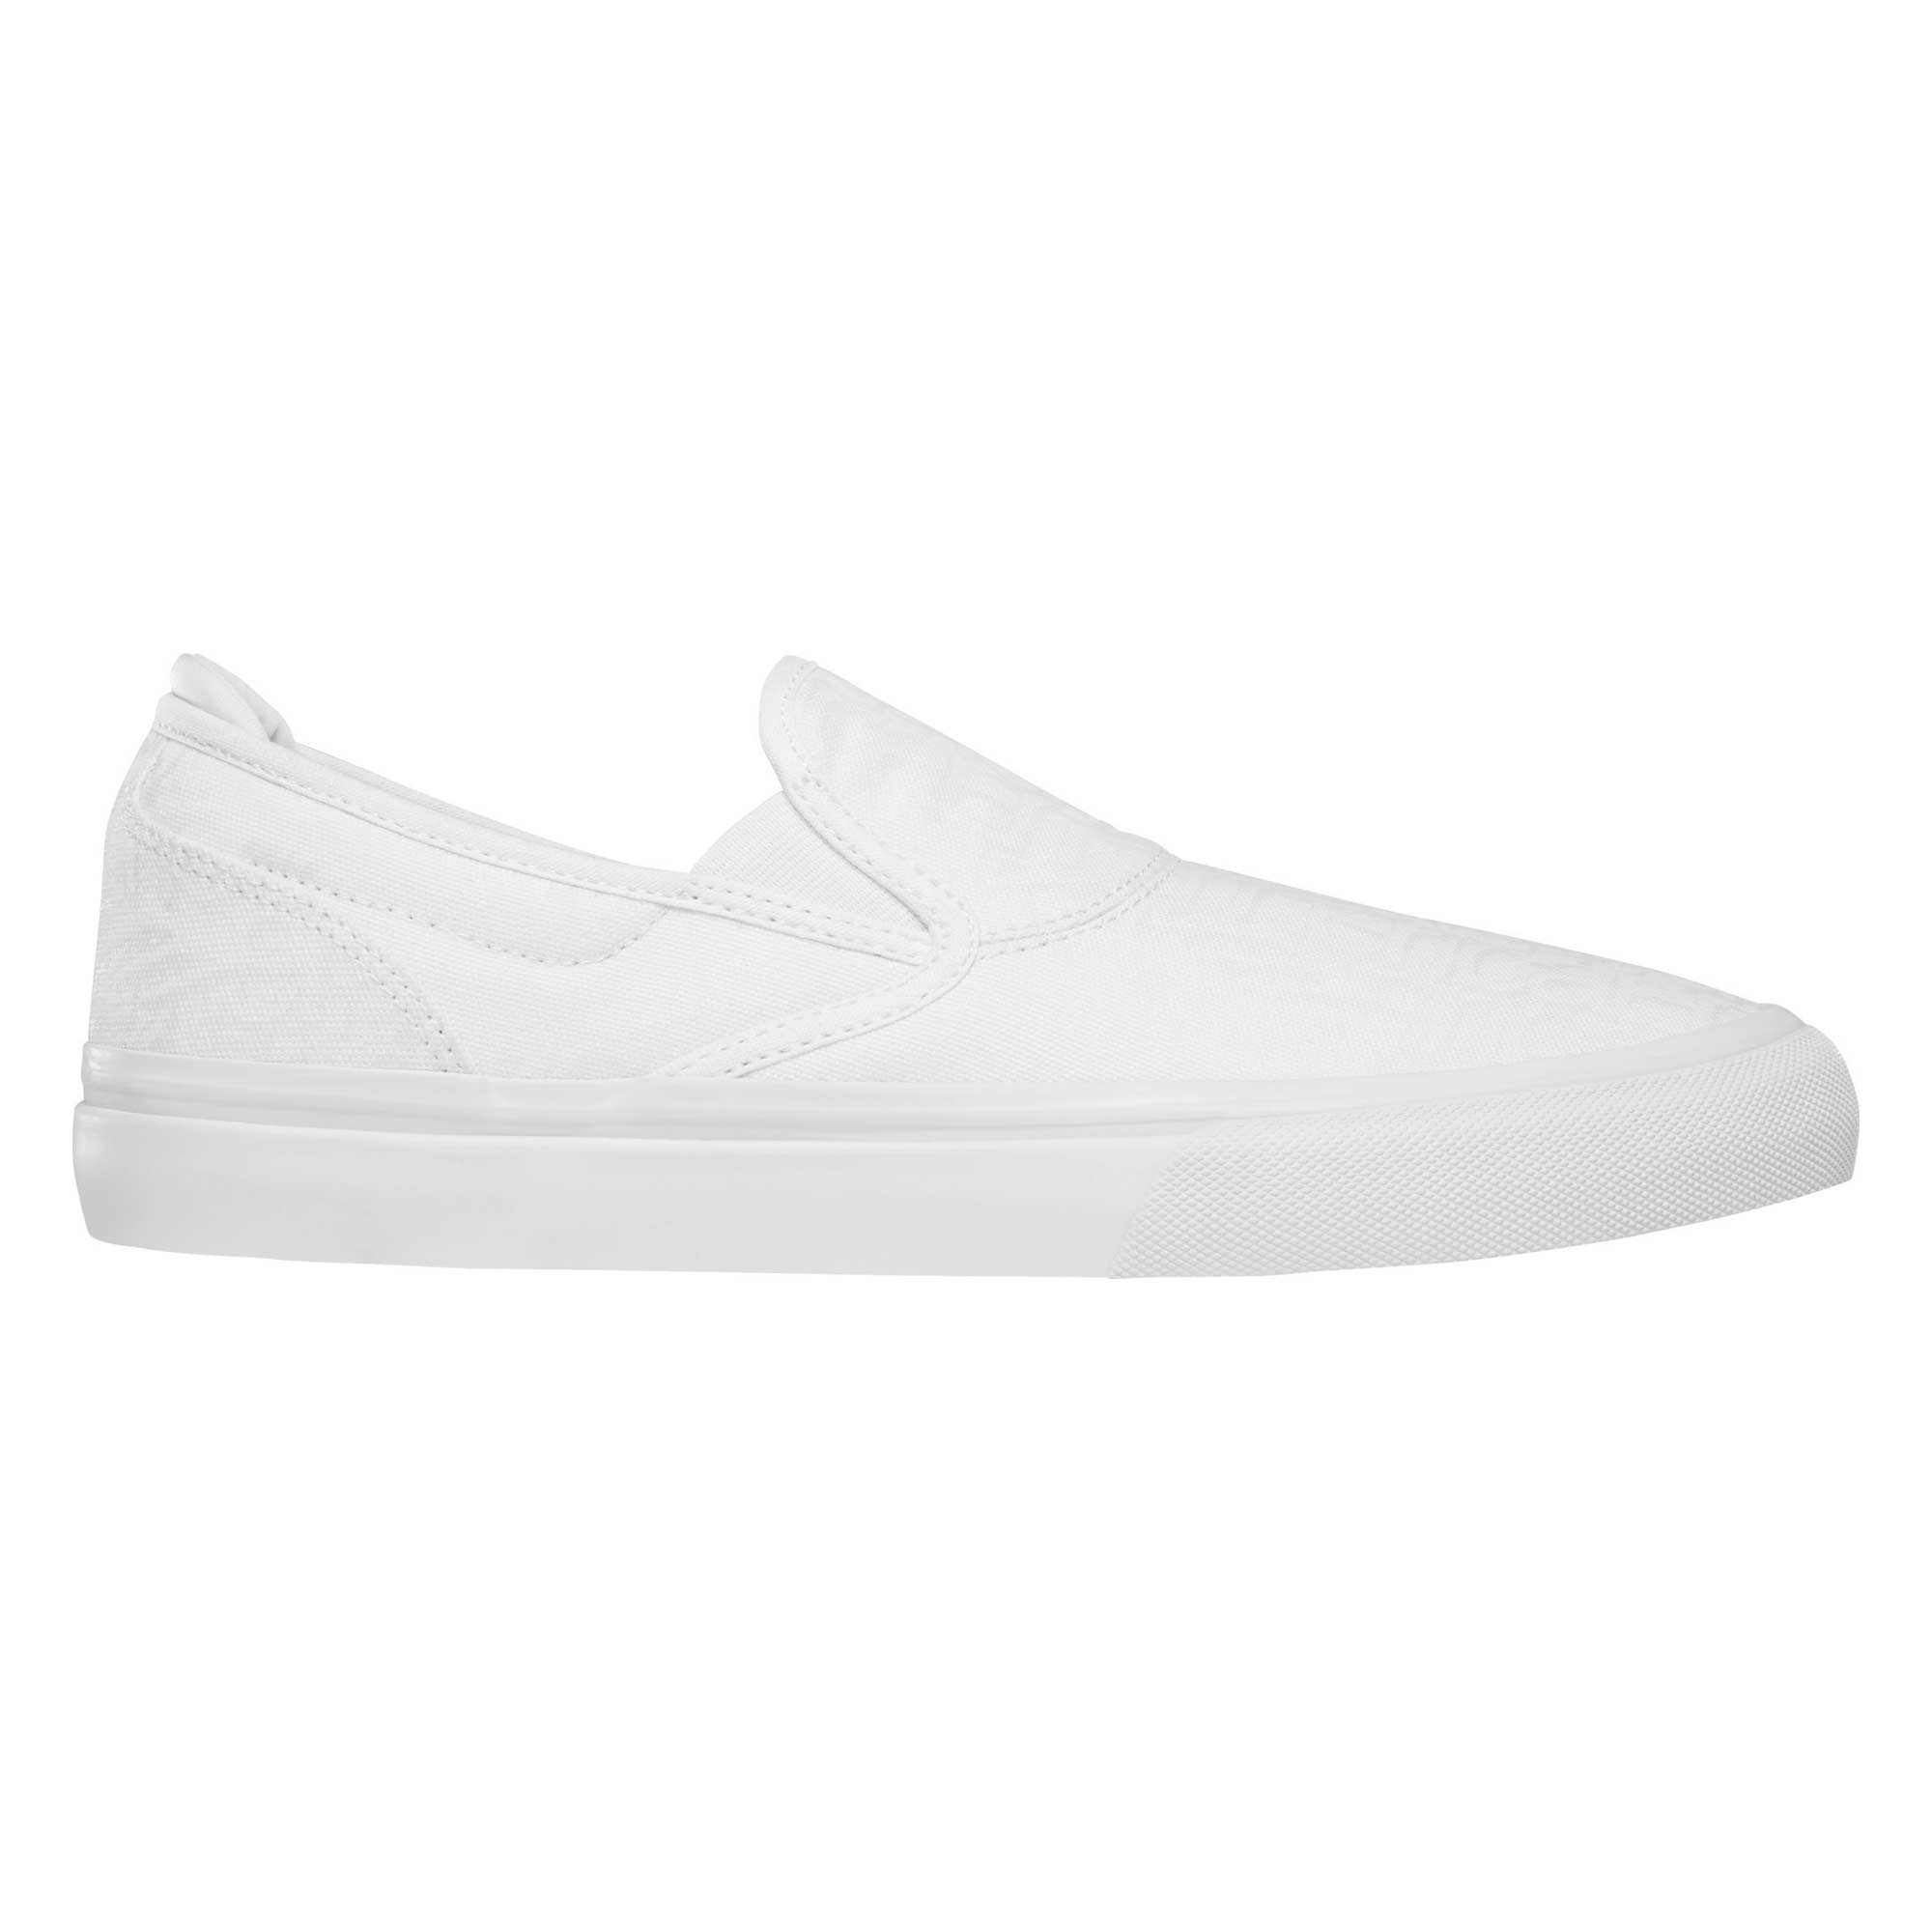 EMERICA Shoe WINO G6 SLIP-ON whi/pri white/print